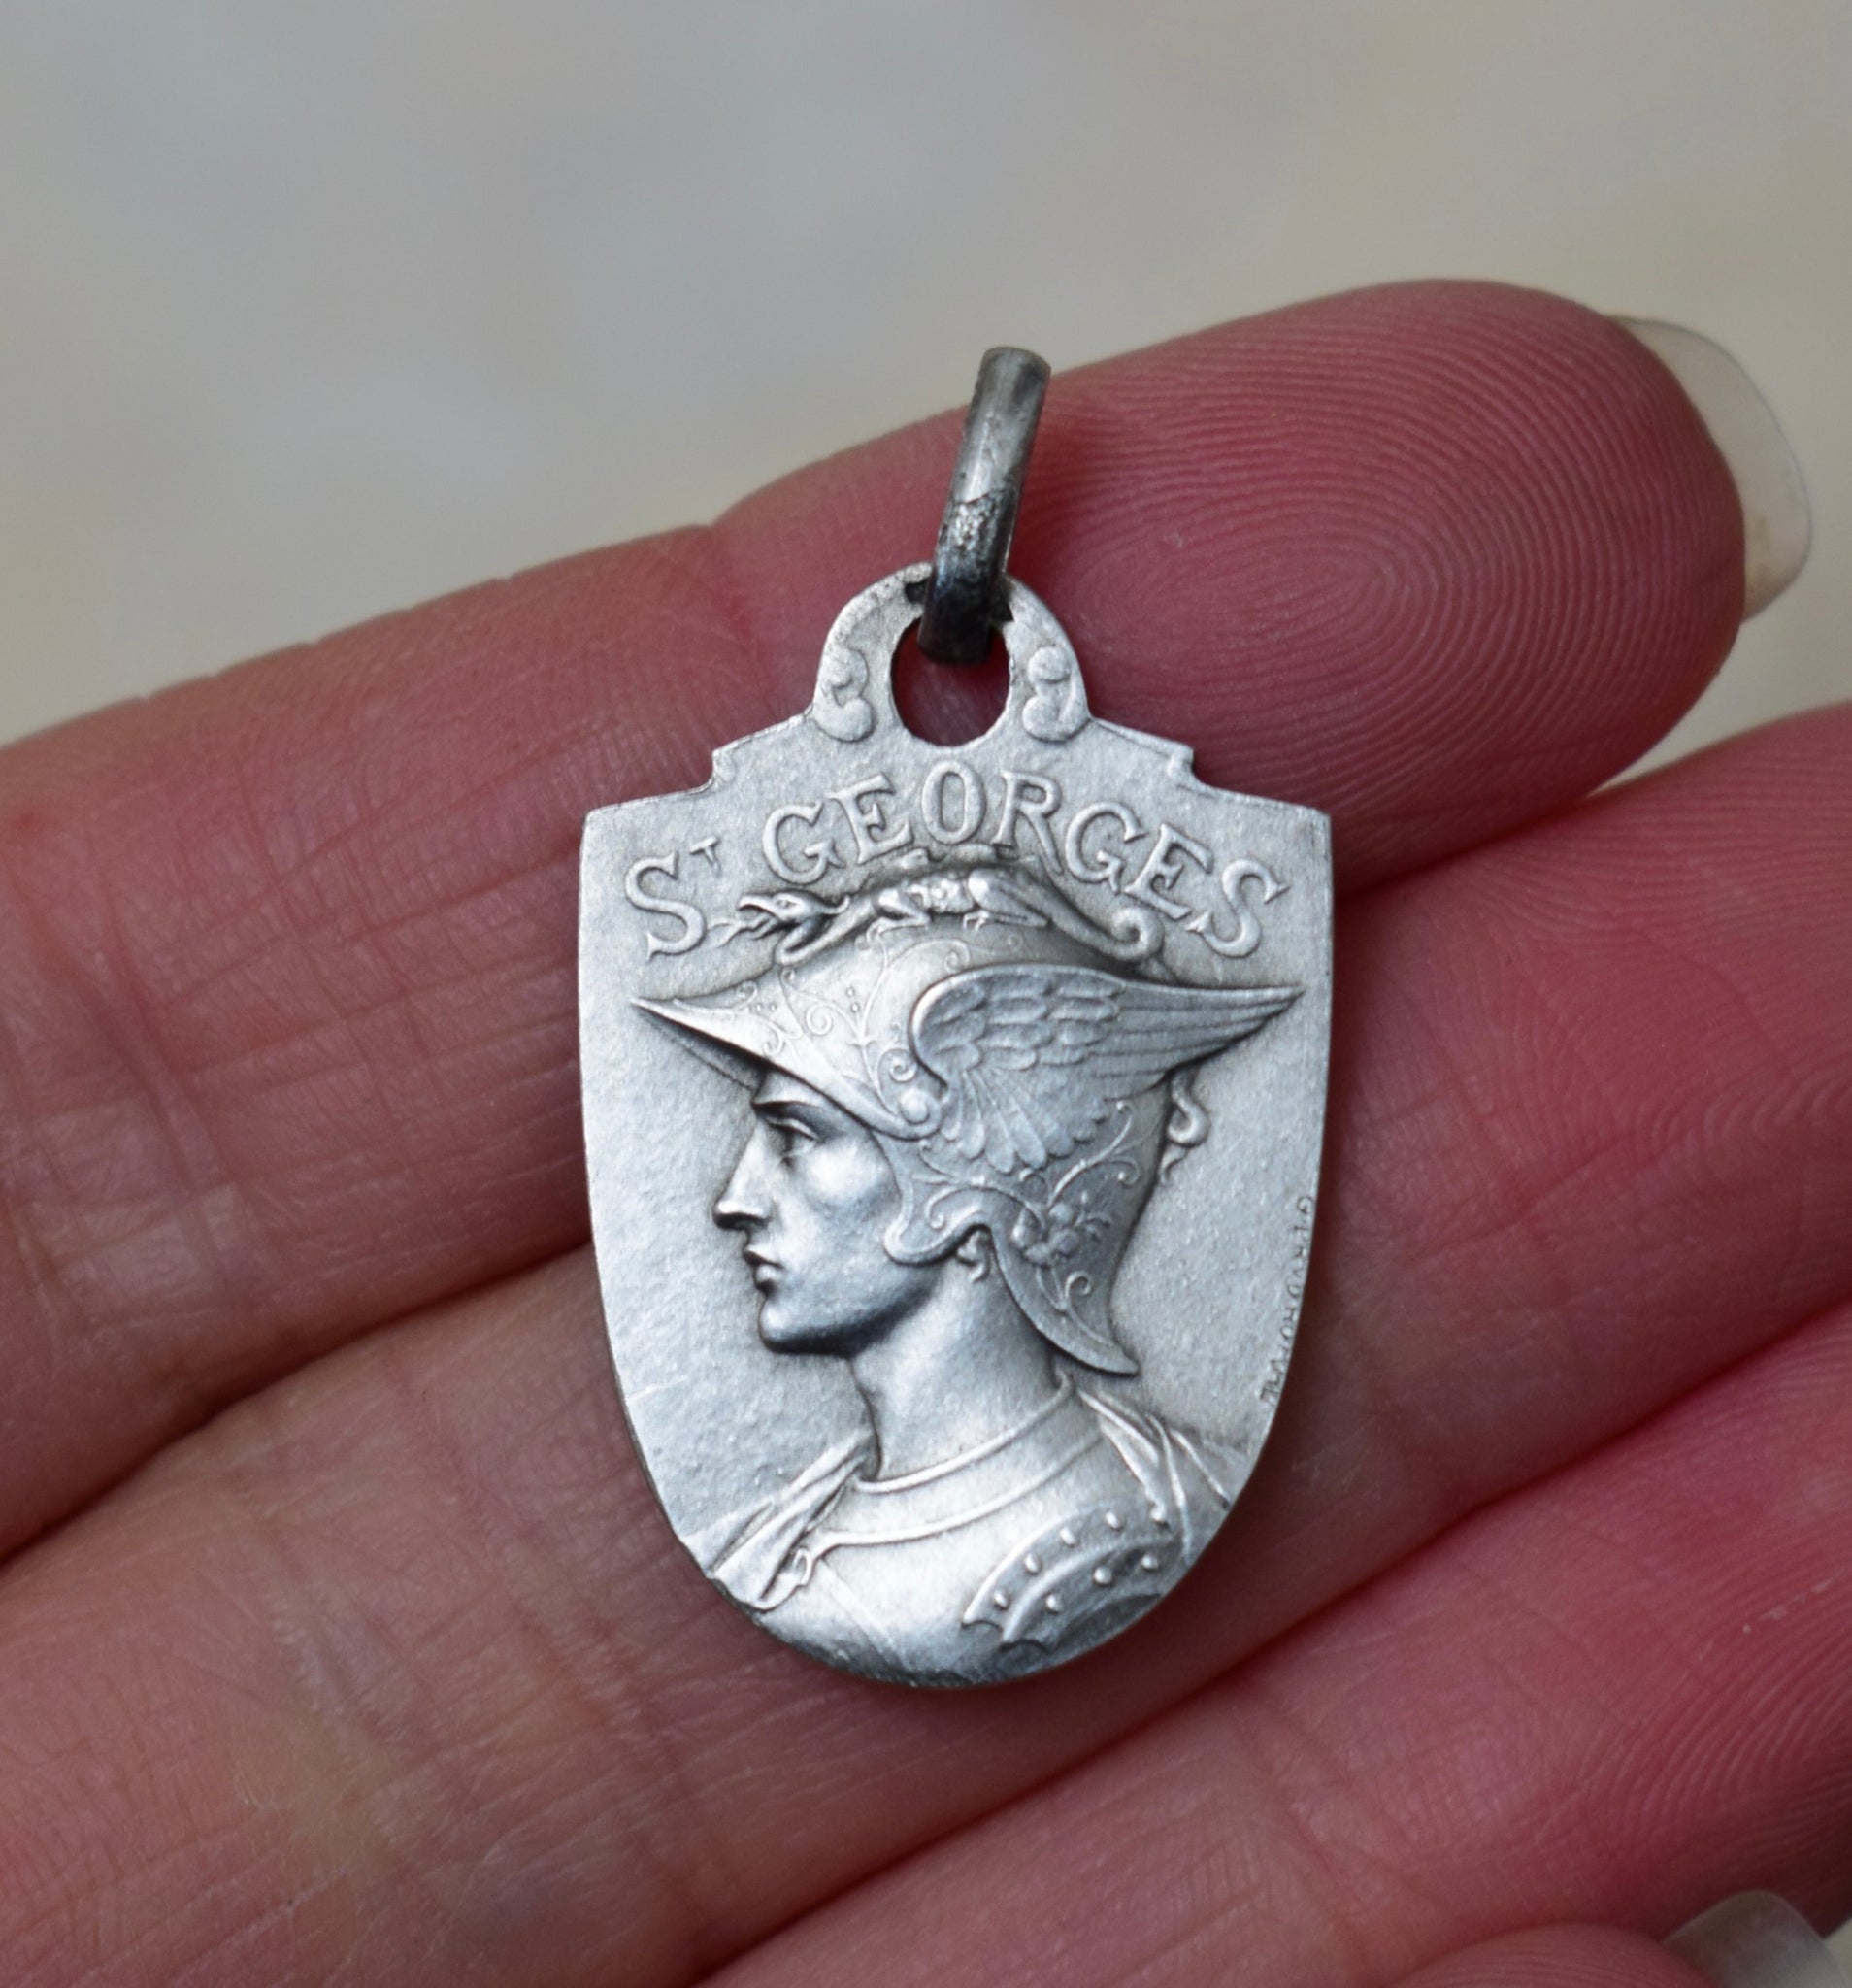 St George Medal by Prudhomme